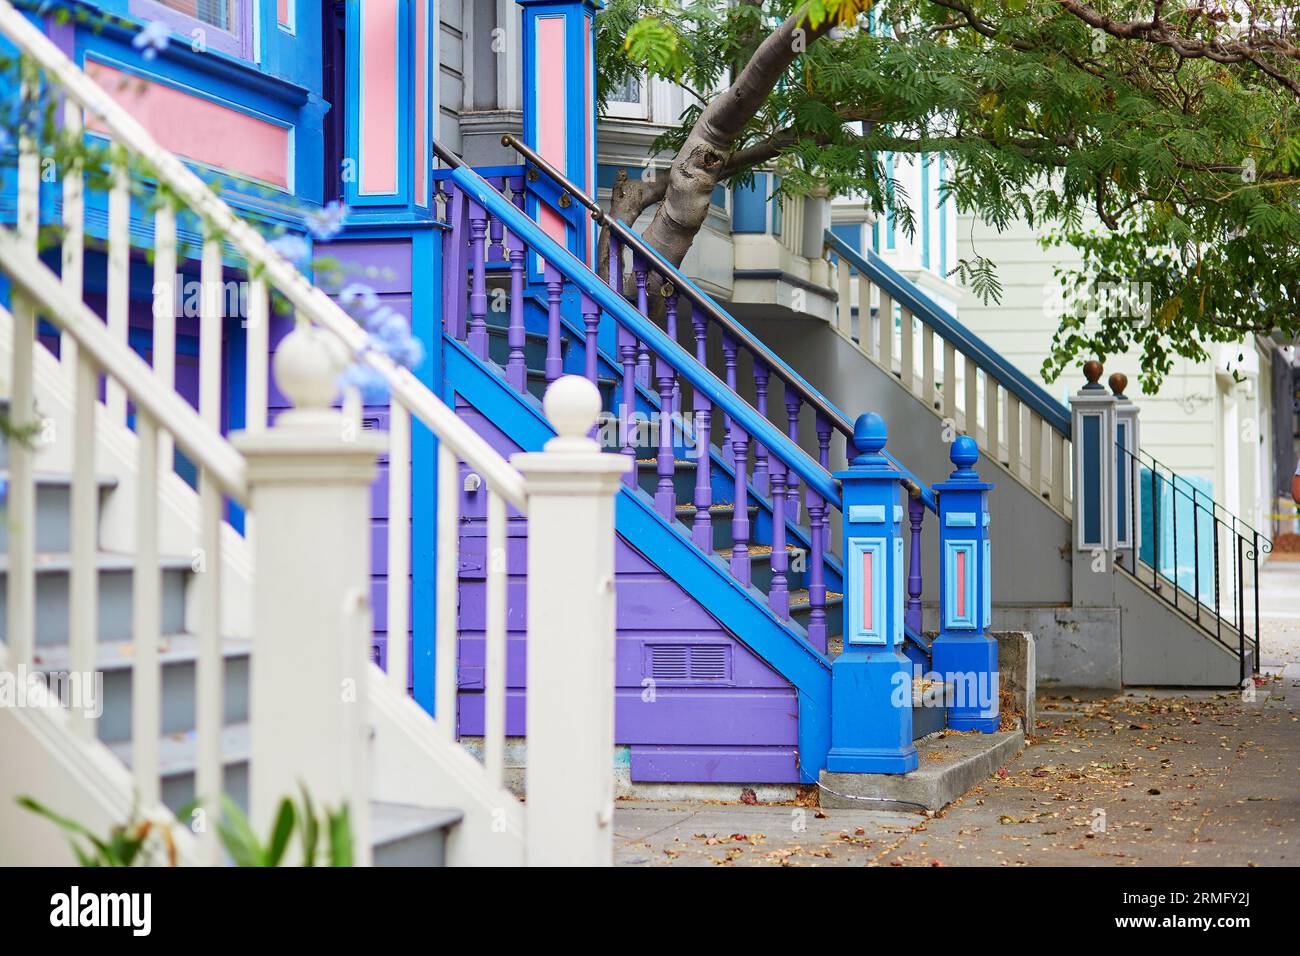 Porches colorés de maisons en bois sur la rue de San Francisco, Californie, USA Banque D'Images